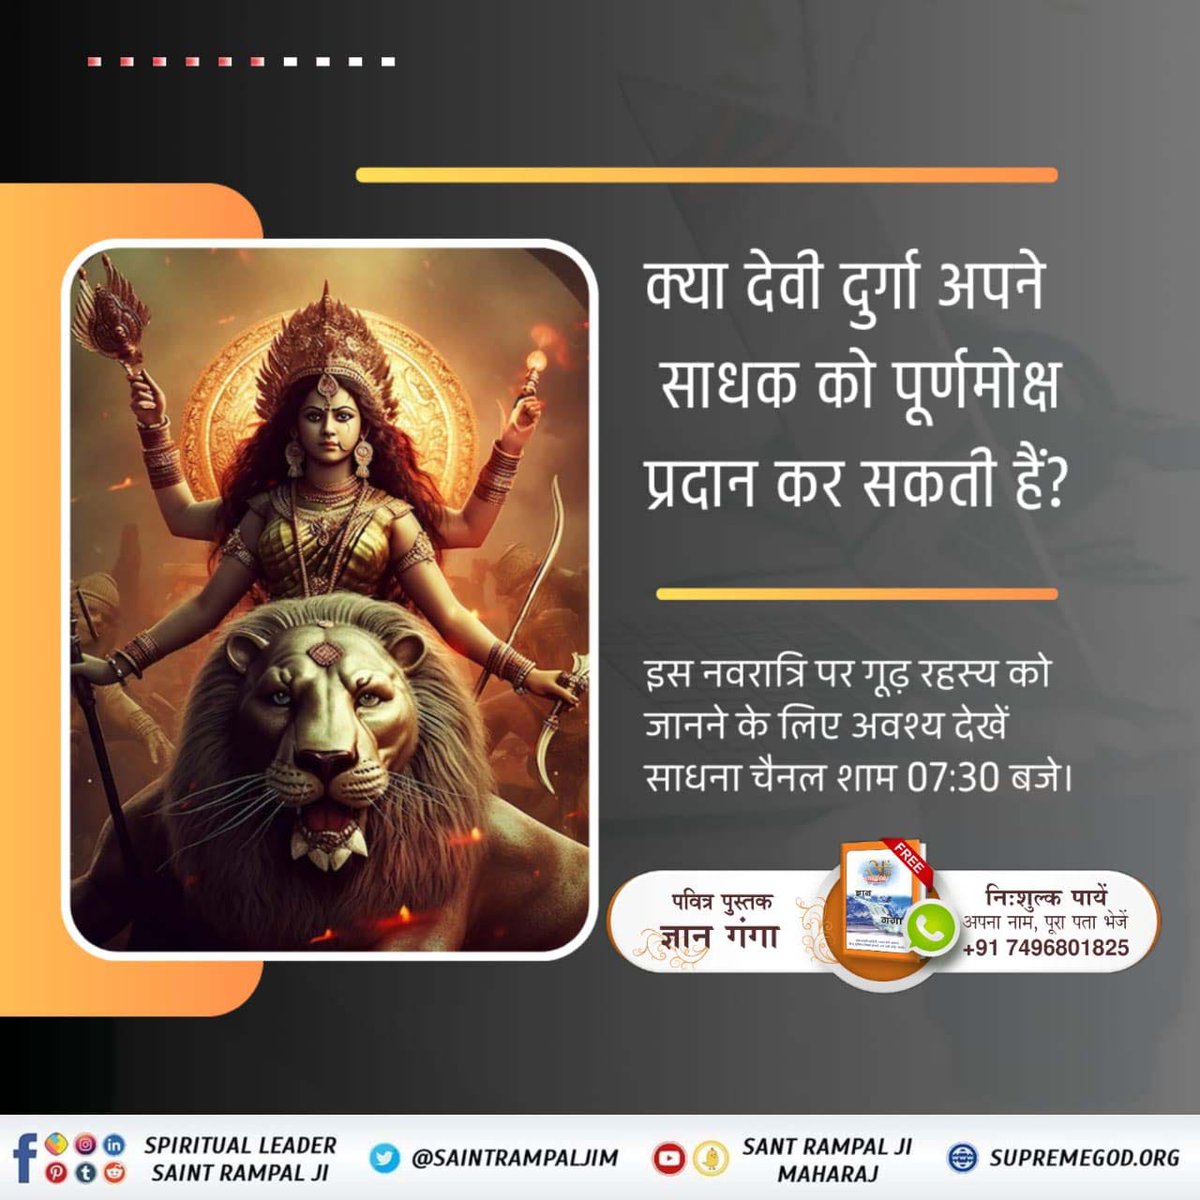 क्या देवी दुर्गा अपने साधक को पूर्ण मोक्ष प्रदान कर सकते हैं? #देवी_मां_को_ऐसे_करें_प्रसन्न ! #SaintRampalJiQuotes Read Gyan Ganga.